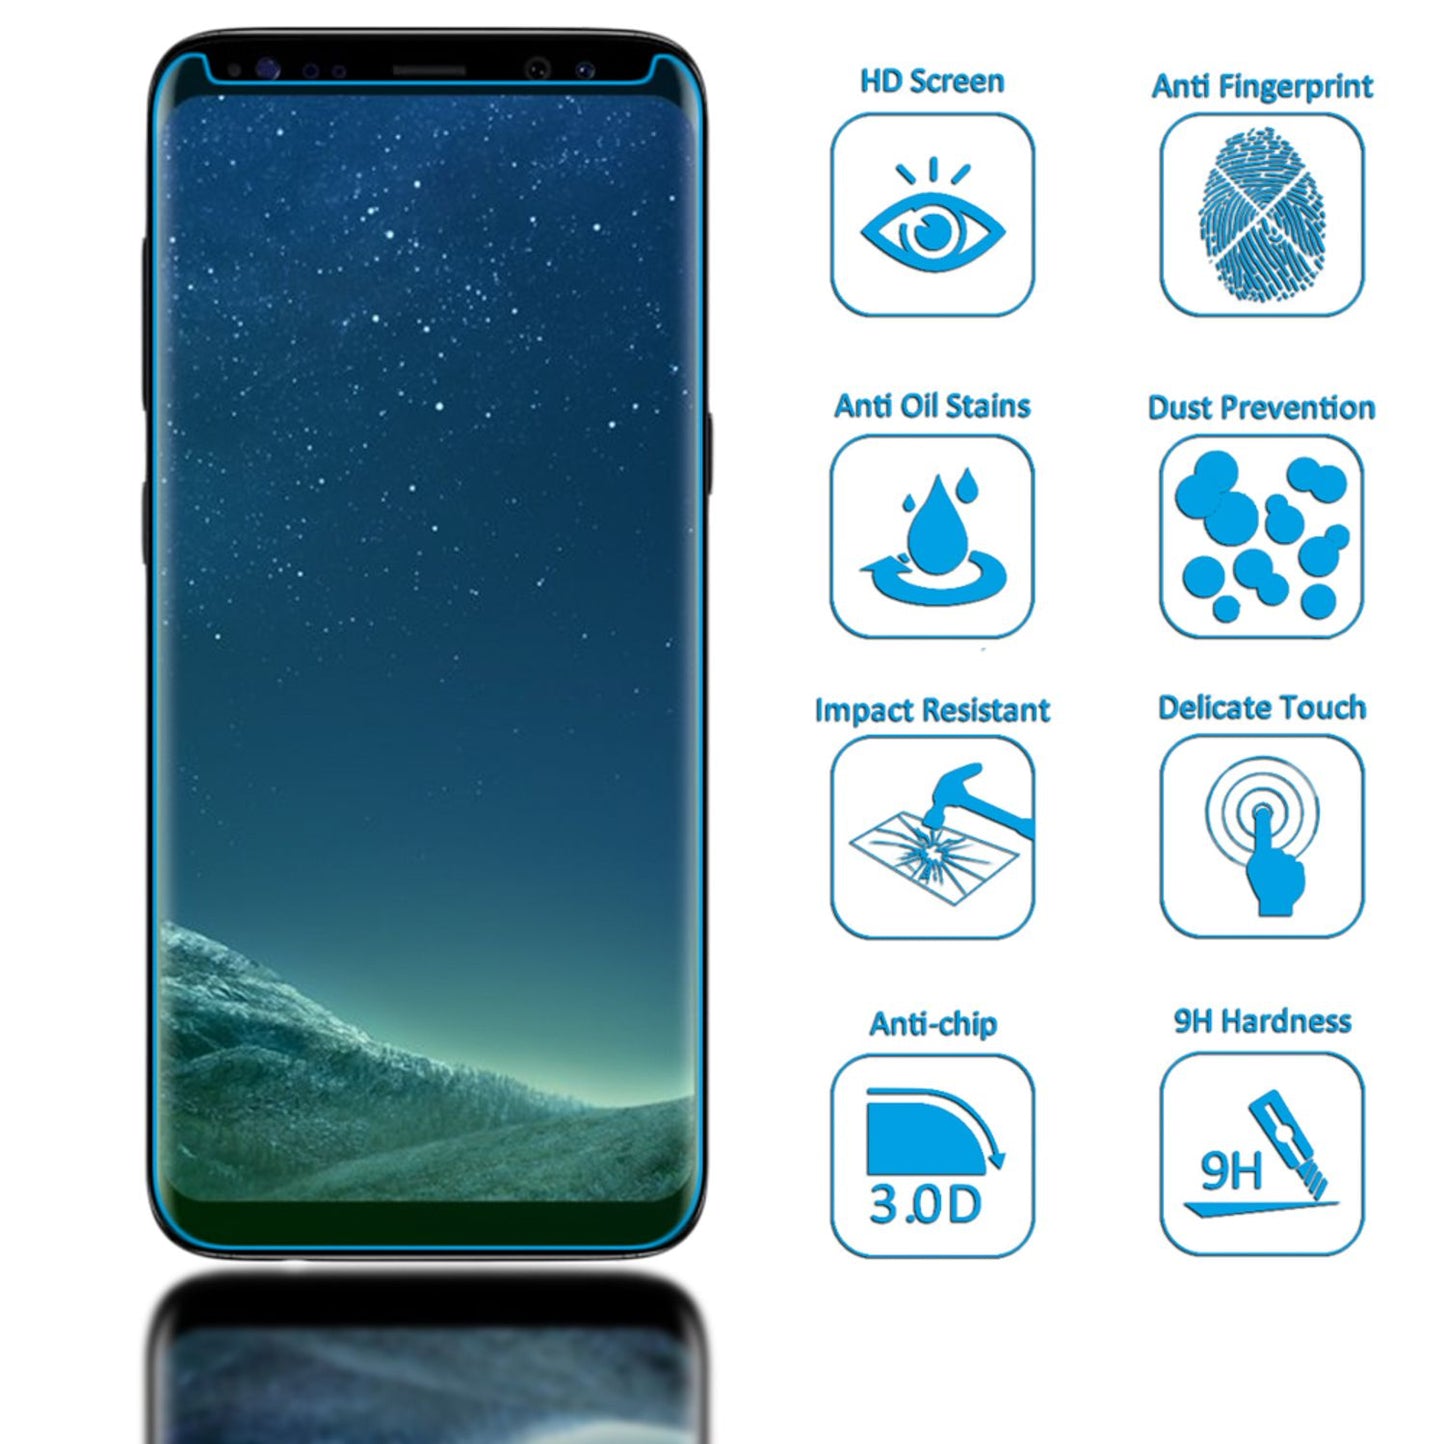 NALIA Schutzglas für Samsung Galaxy S8, 9H Full Cover Displayschutz Glasfolie